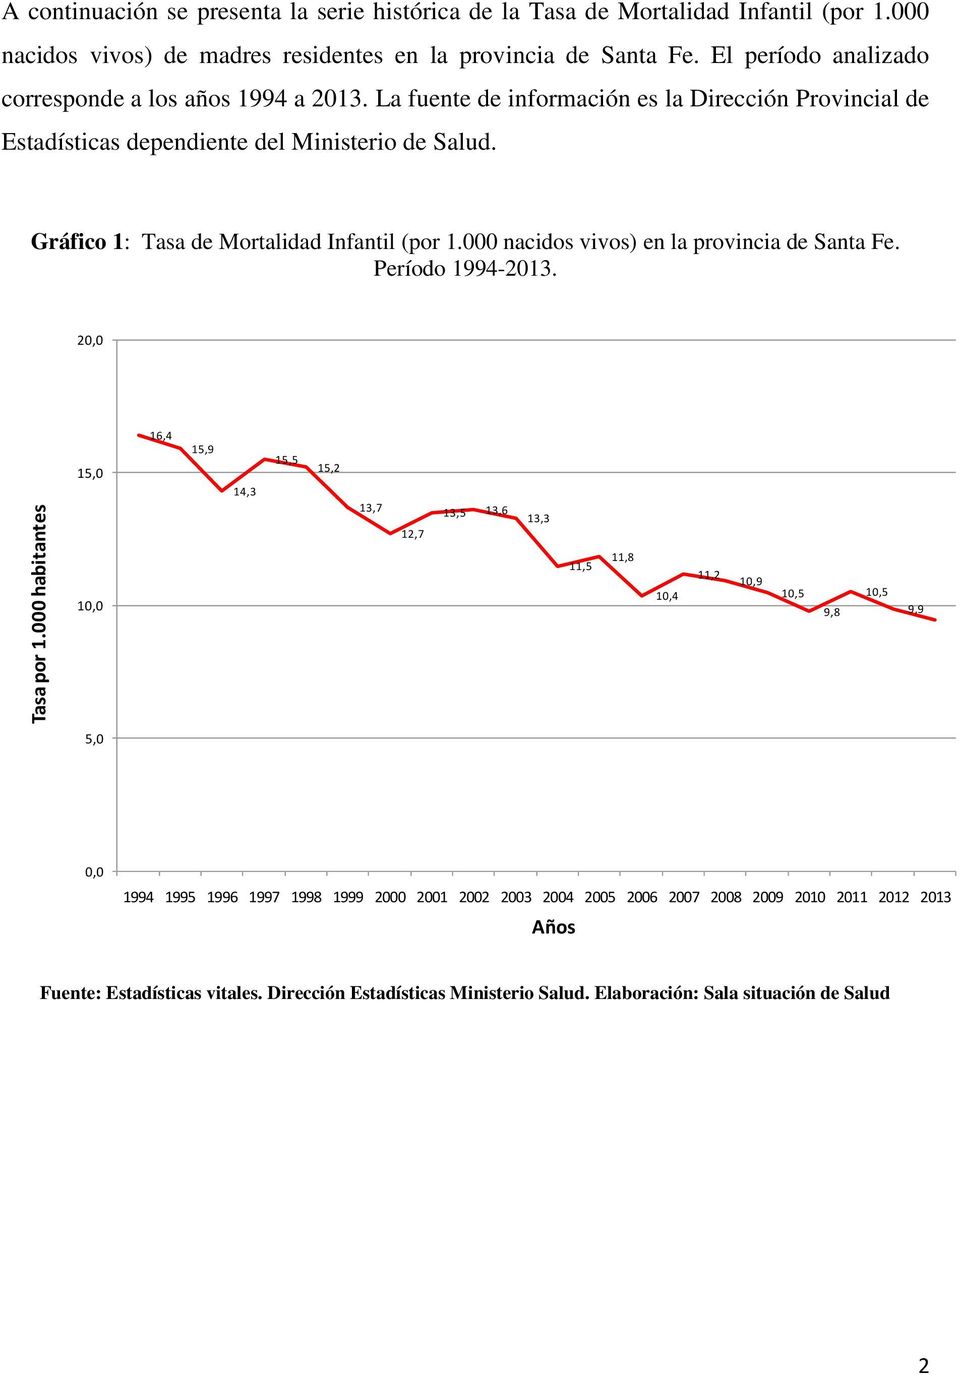 Gráfico 1: Tasa de Mortalidad Infantil (por 1.000 nacidos vivos) en la provincia de Santa Fe. Período 1994-2013.